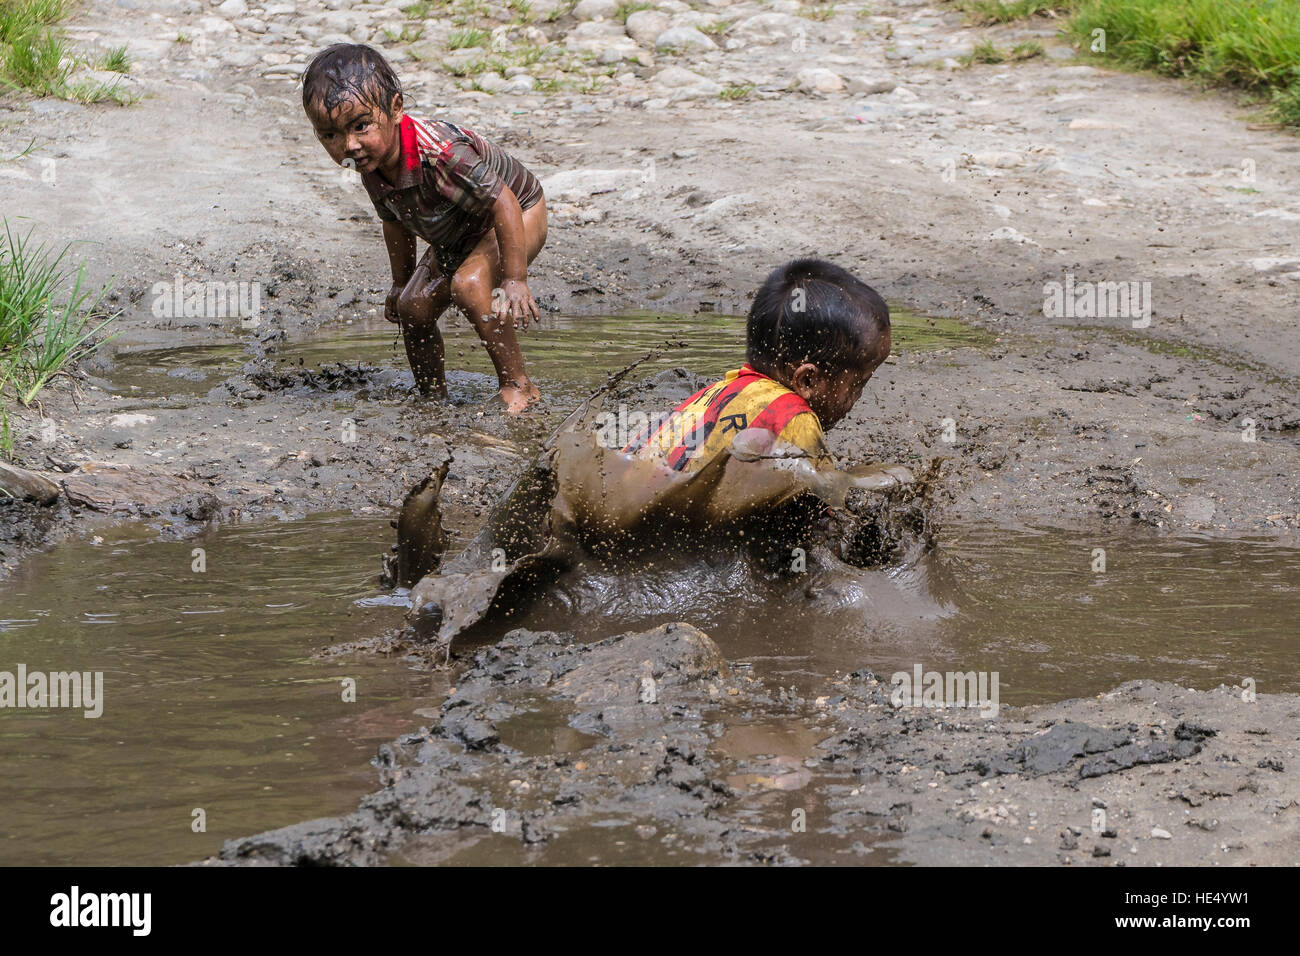 Les deux garçons, seuls port shirts, jouent dans la boue d'un étang Banque D'Images